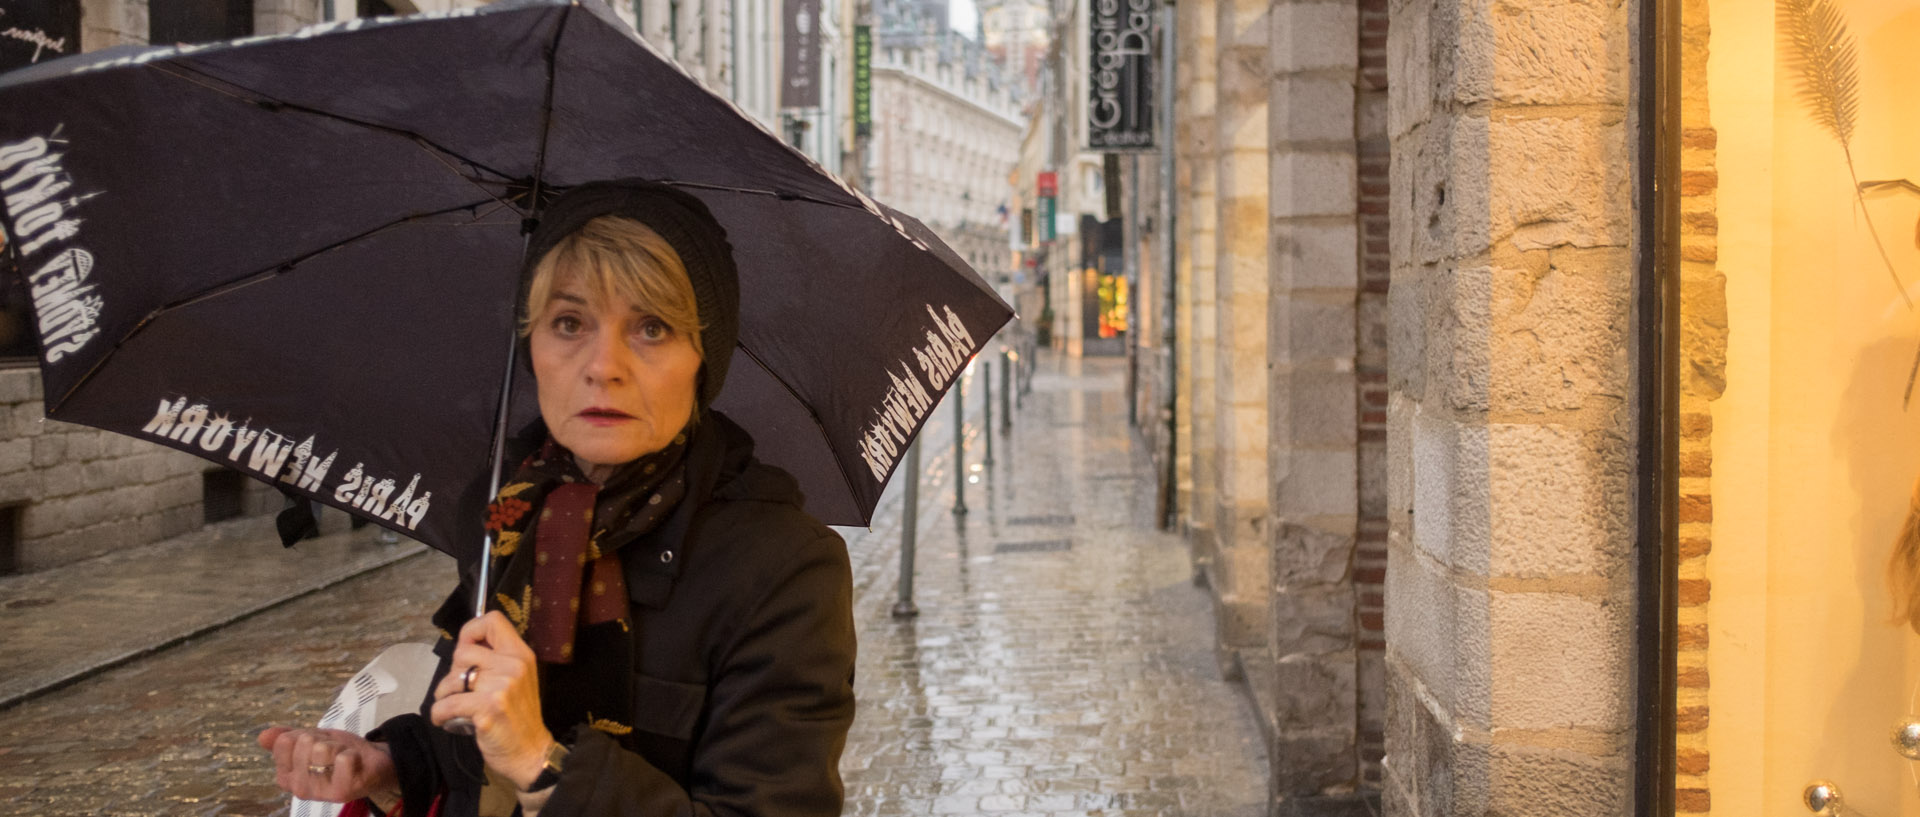 Femme sous un parapluie, rue Lepelletier, à Lille.